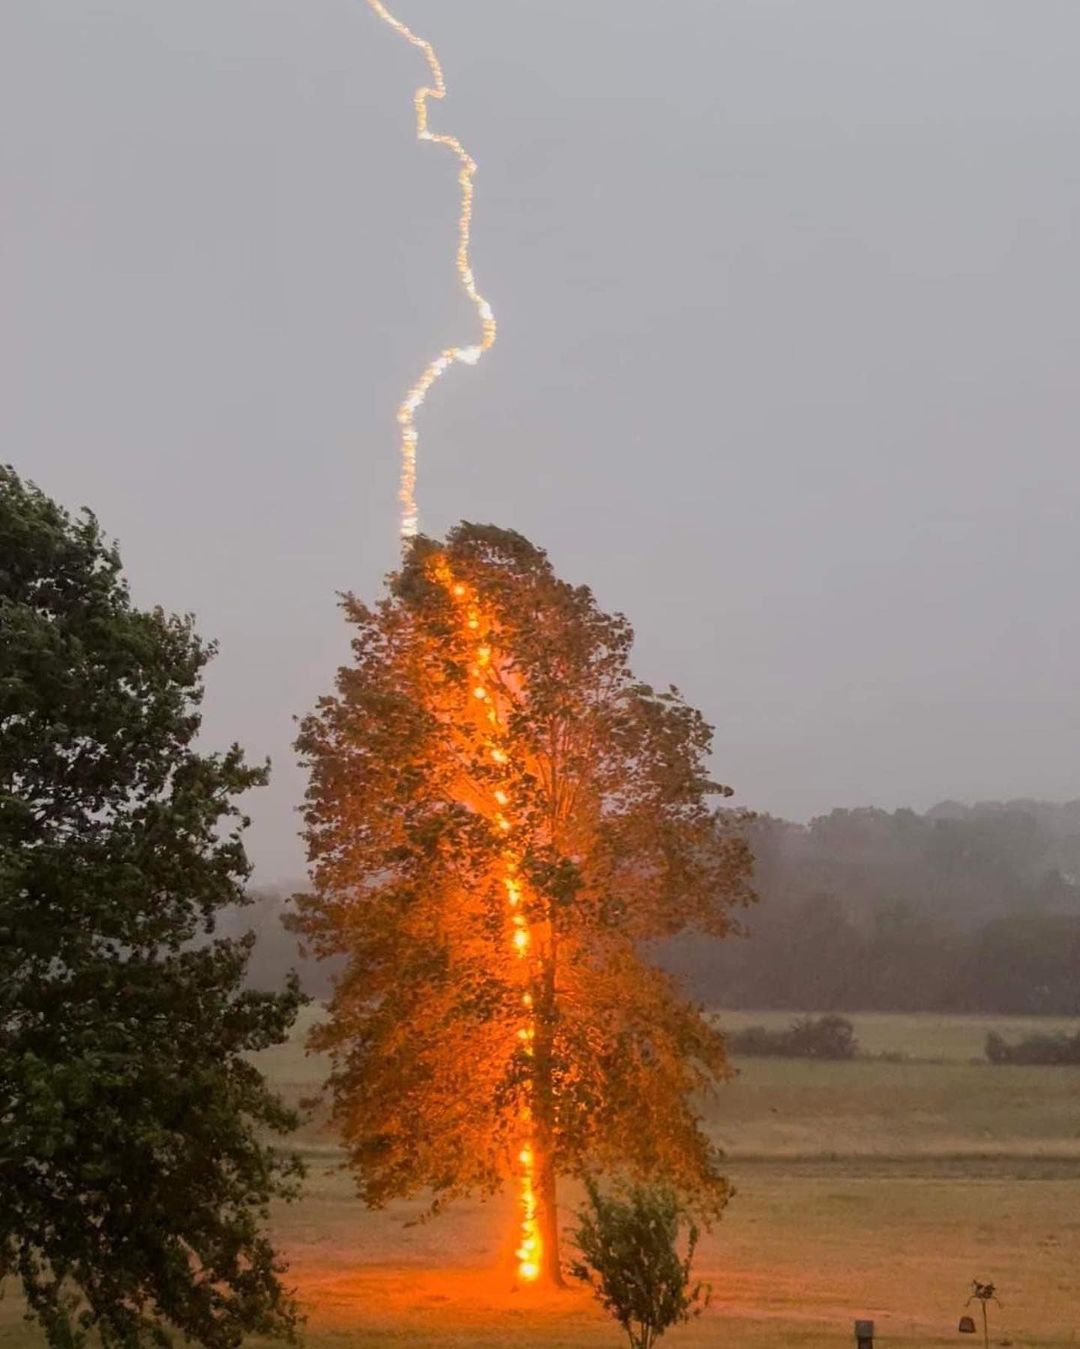 تصویری جالب از لحظه برخورد صاعقه به درخت + عکس